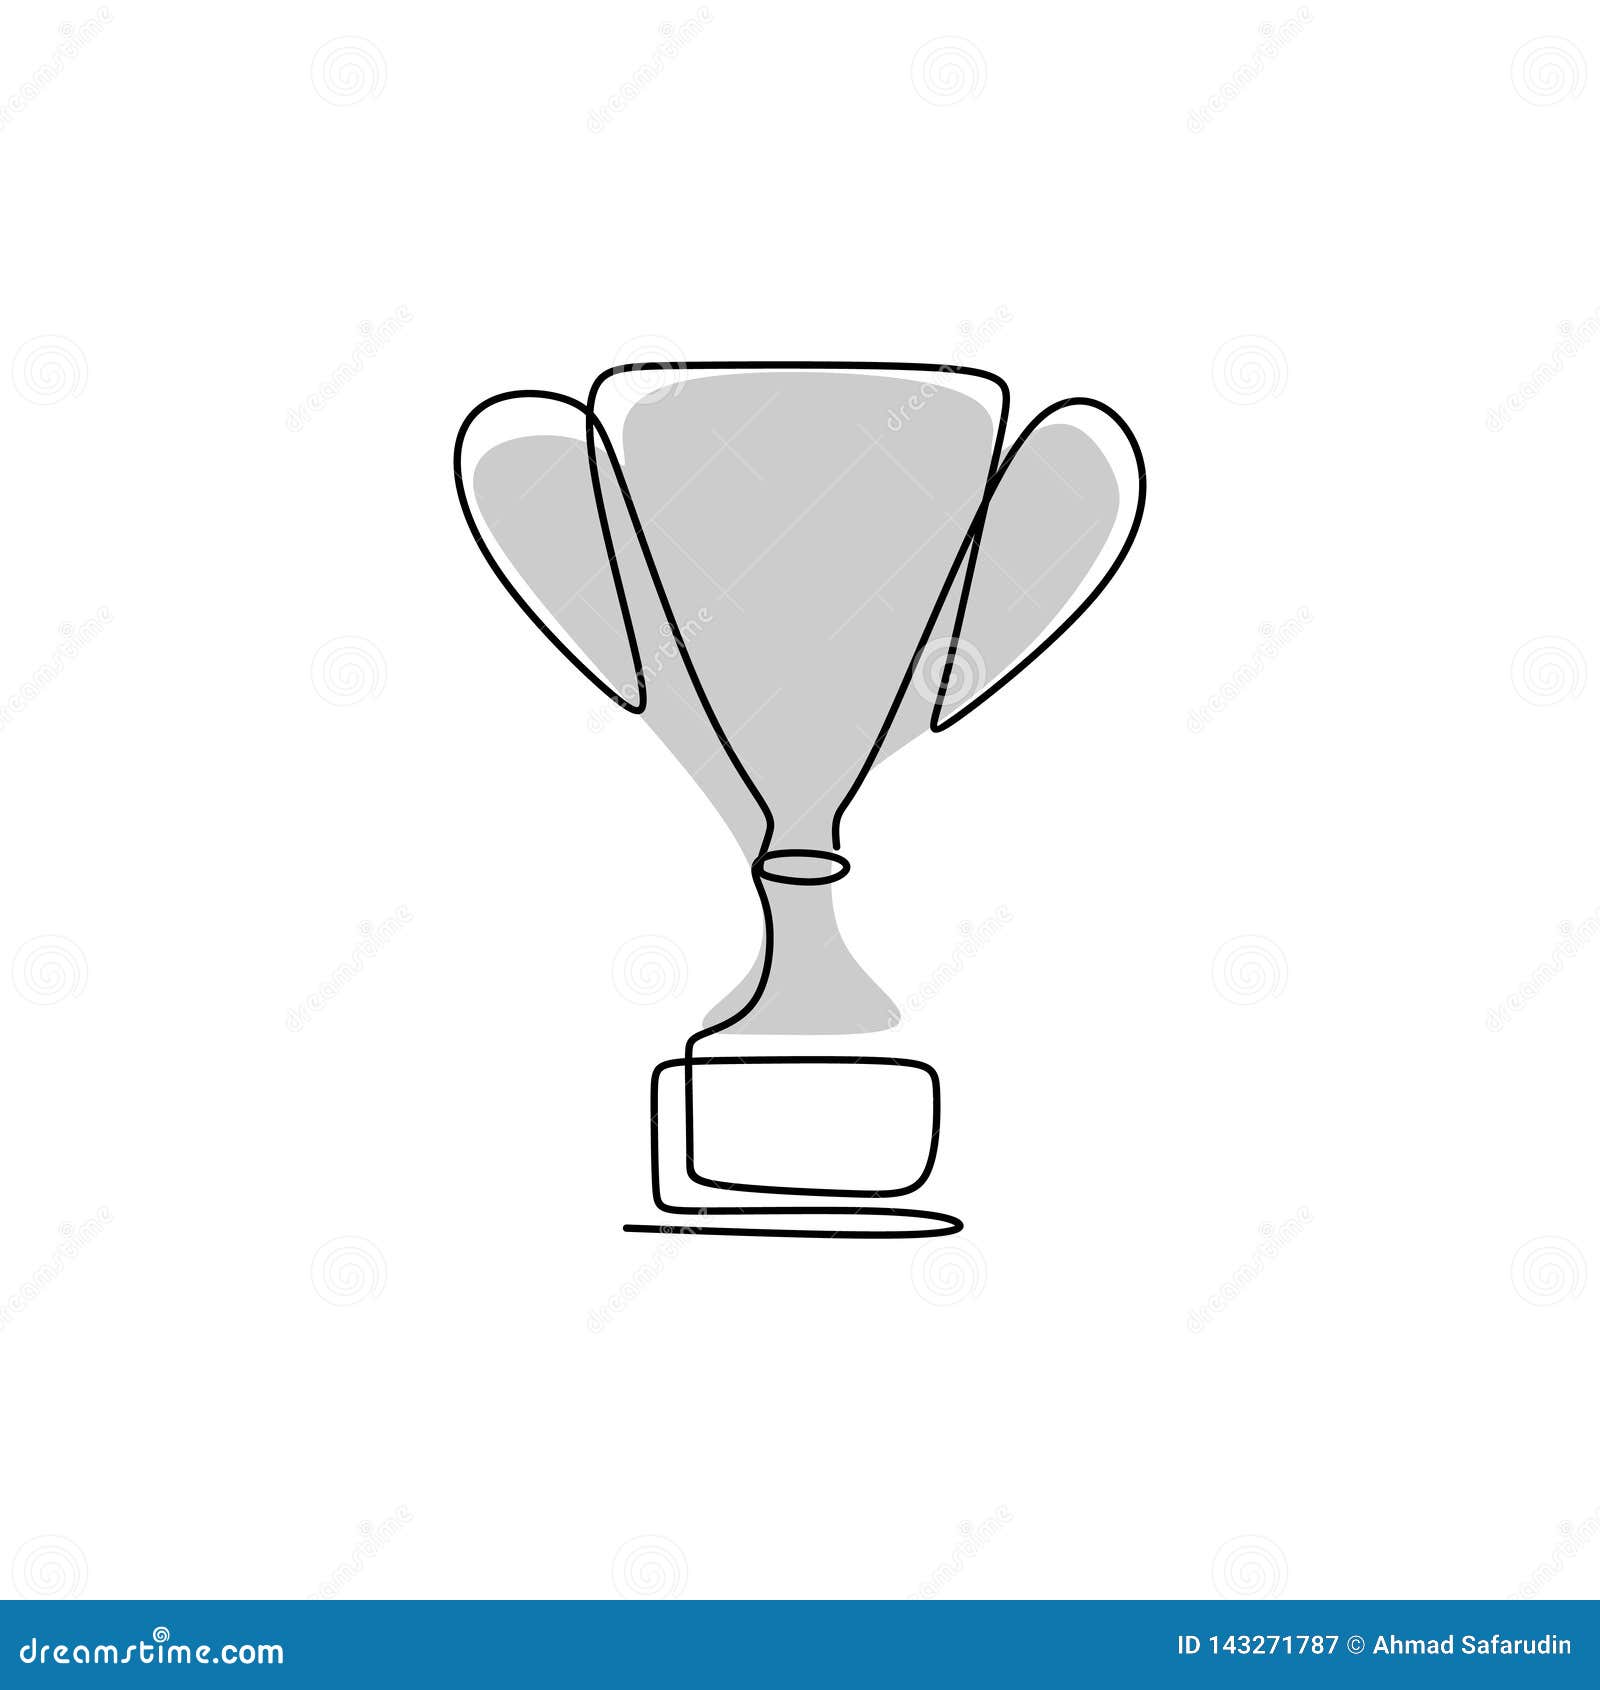 Dibujo De Una Línea Continua De Trofeos Del Premio Para Los Campeones Stock  de ilustración - Ilustración de mano, éxito: 143271787